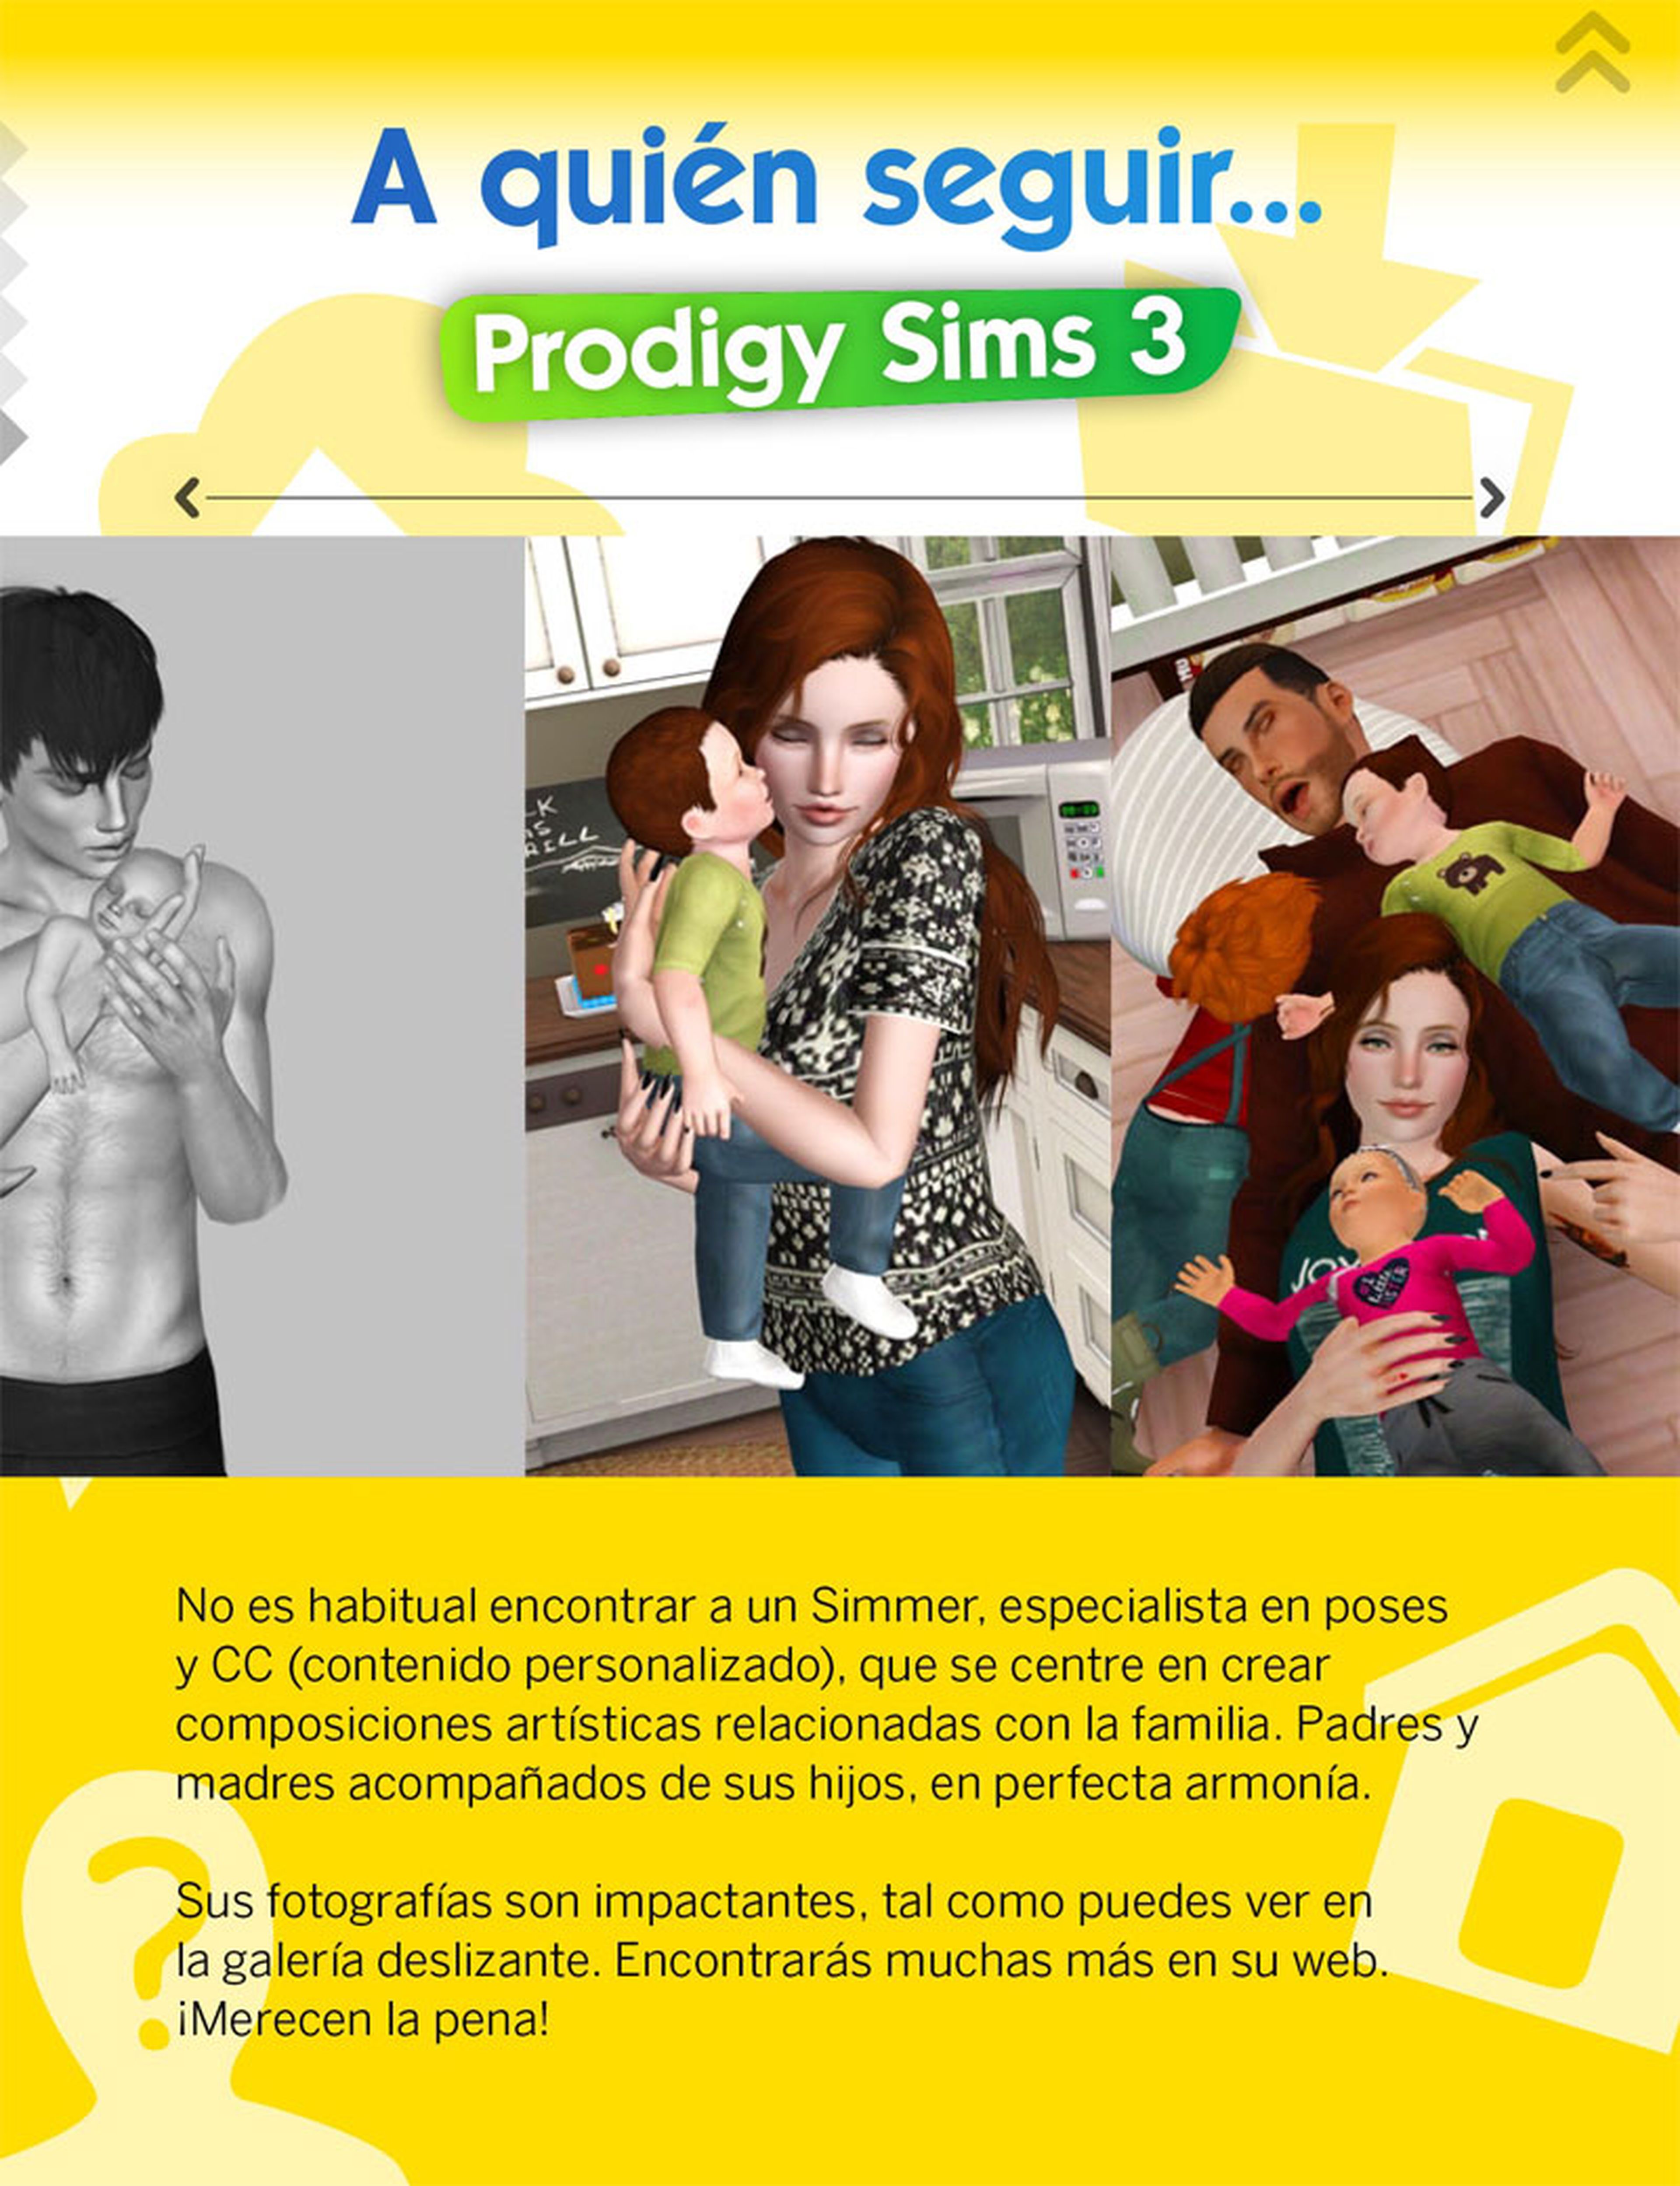 ¡Ya puedes descargar gratis el número 10 de La Revista Oficial de Los Sims!